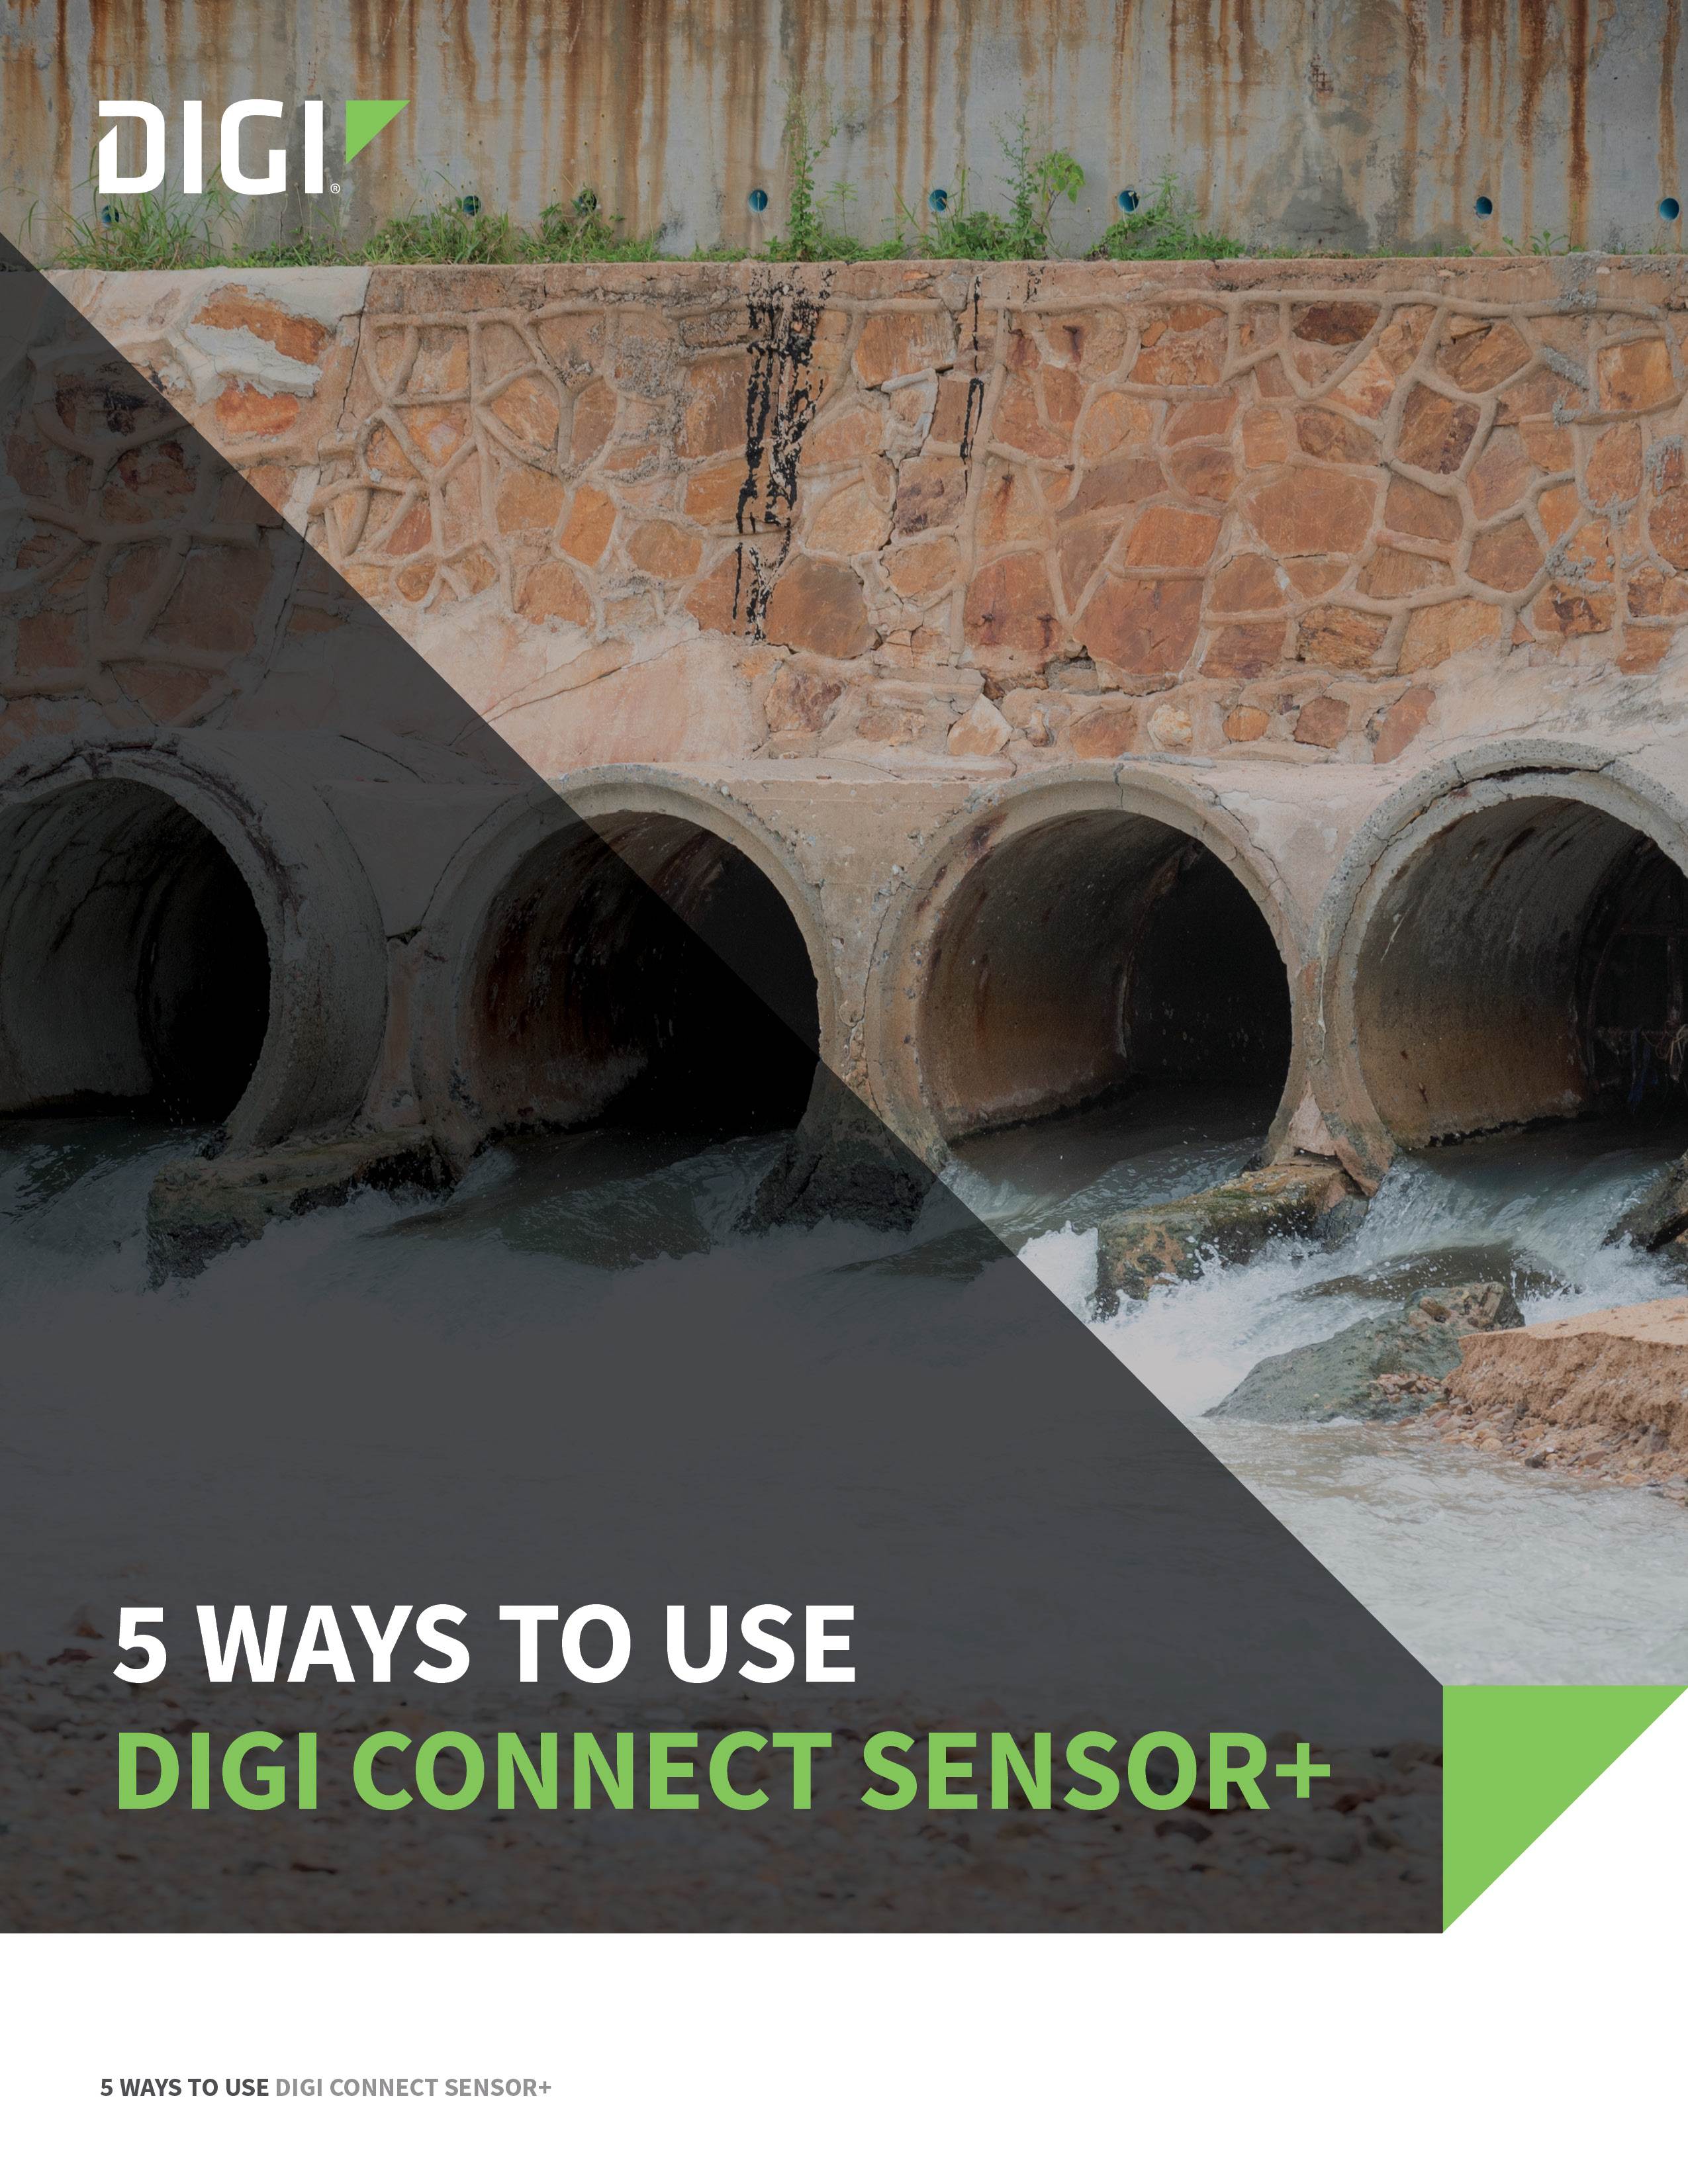 5 façons d'utiliser le Digi Connect Sensor+